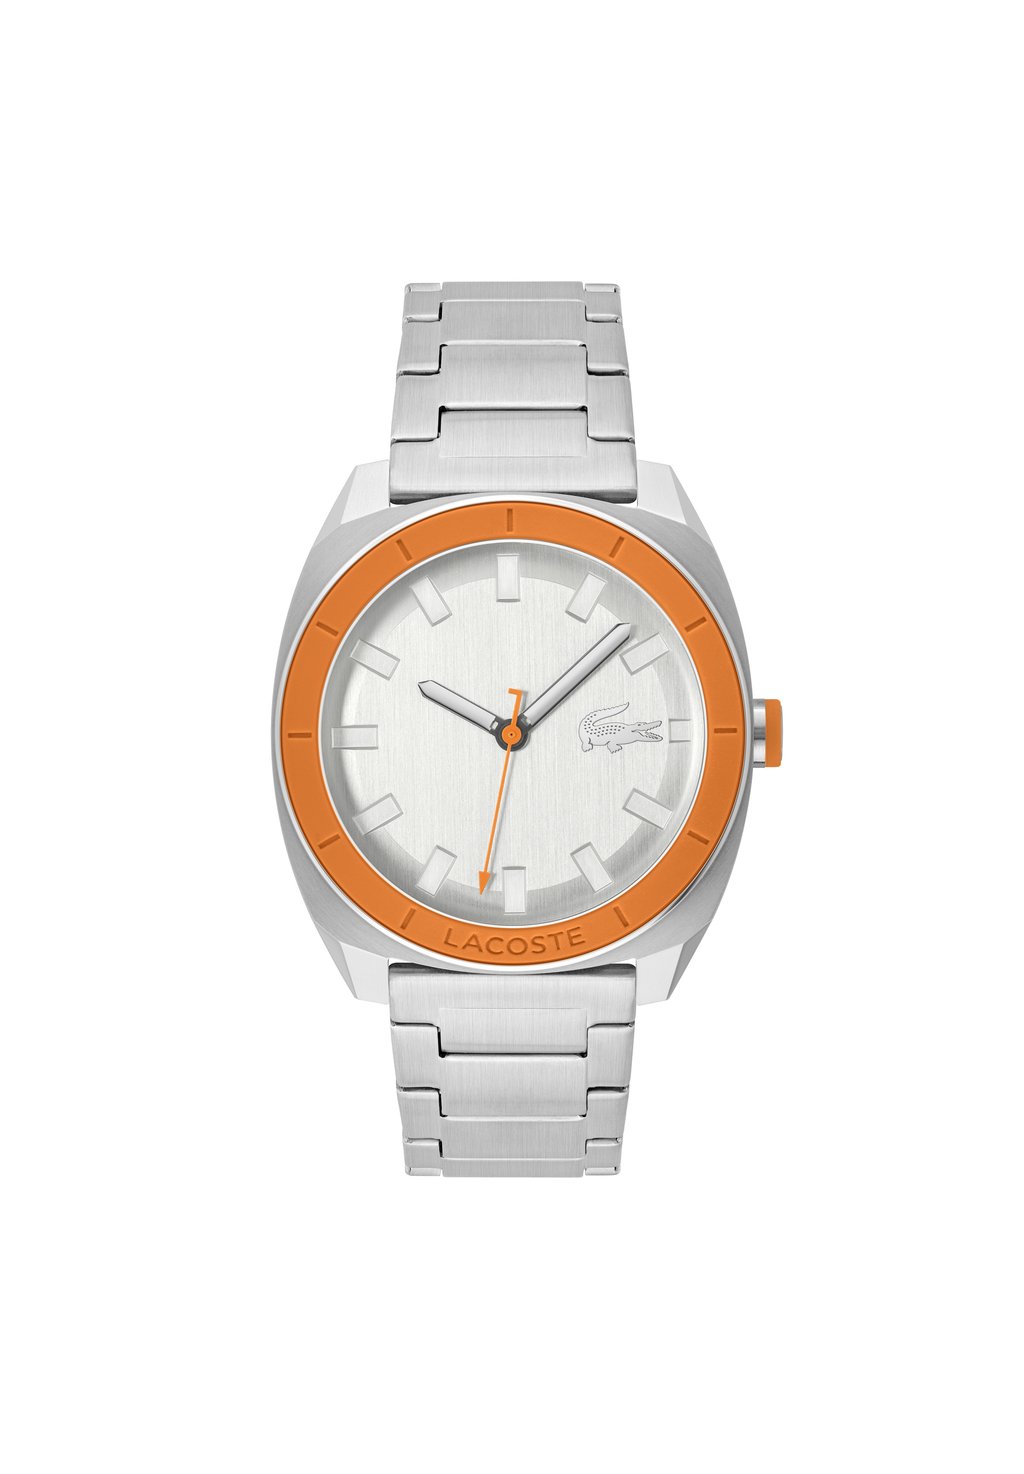 Часы Sprint Lacoste, цвет silber orange silber silber фотографии